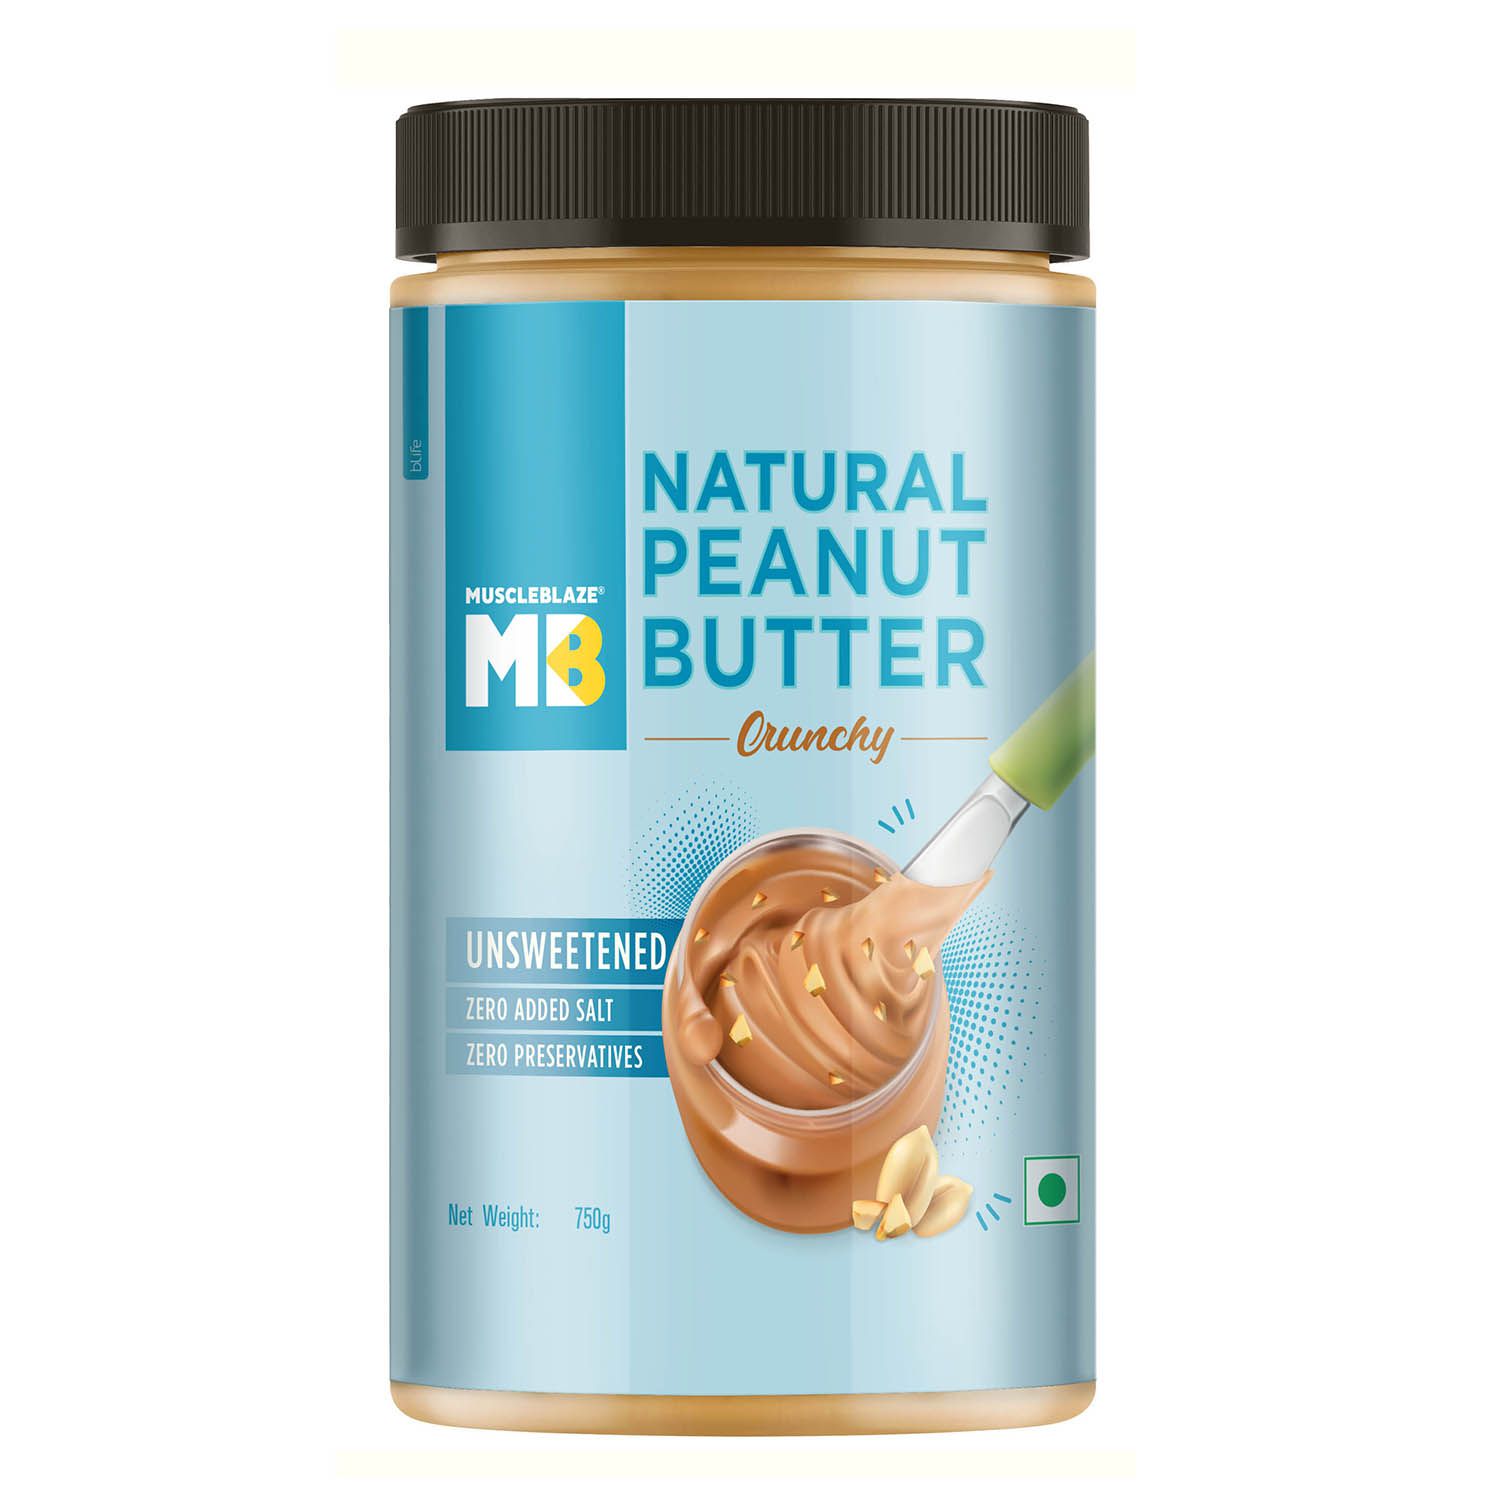 MuscleBlaze Natural Peanut Butter 750g Crunchy